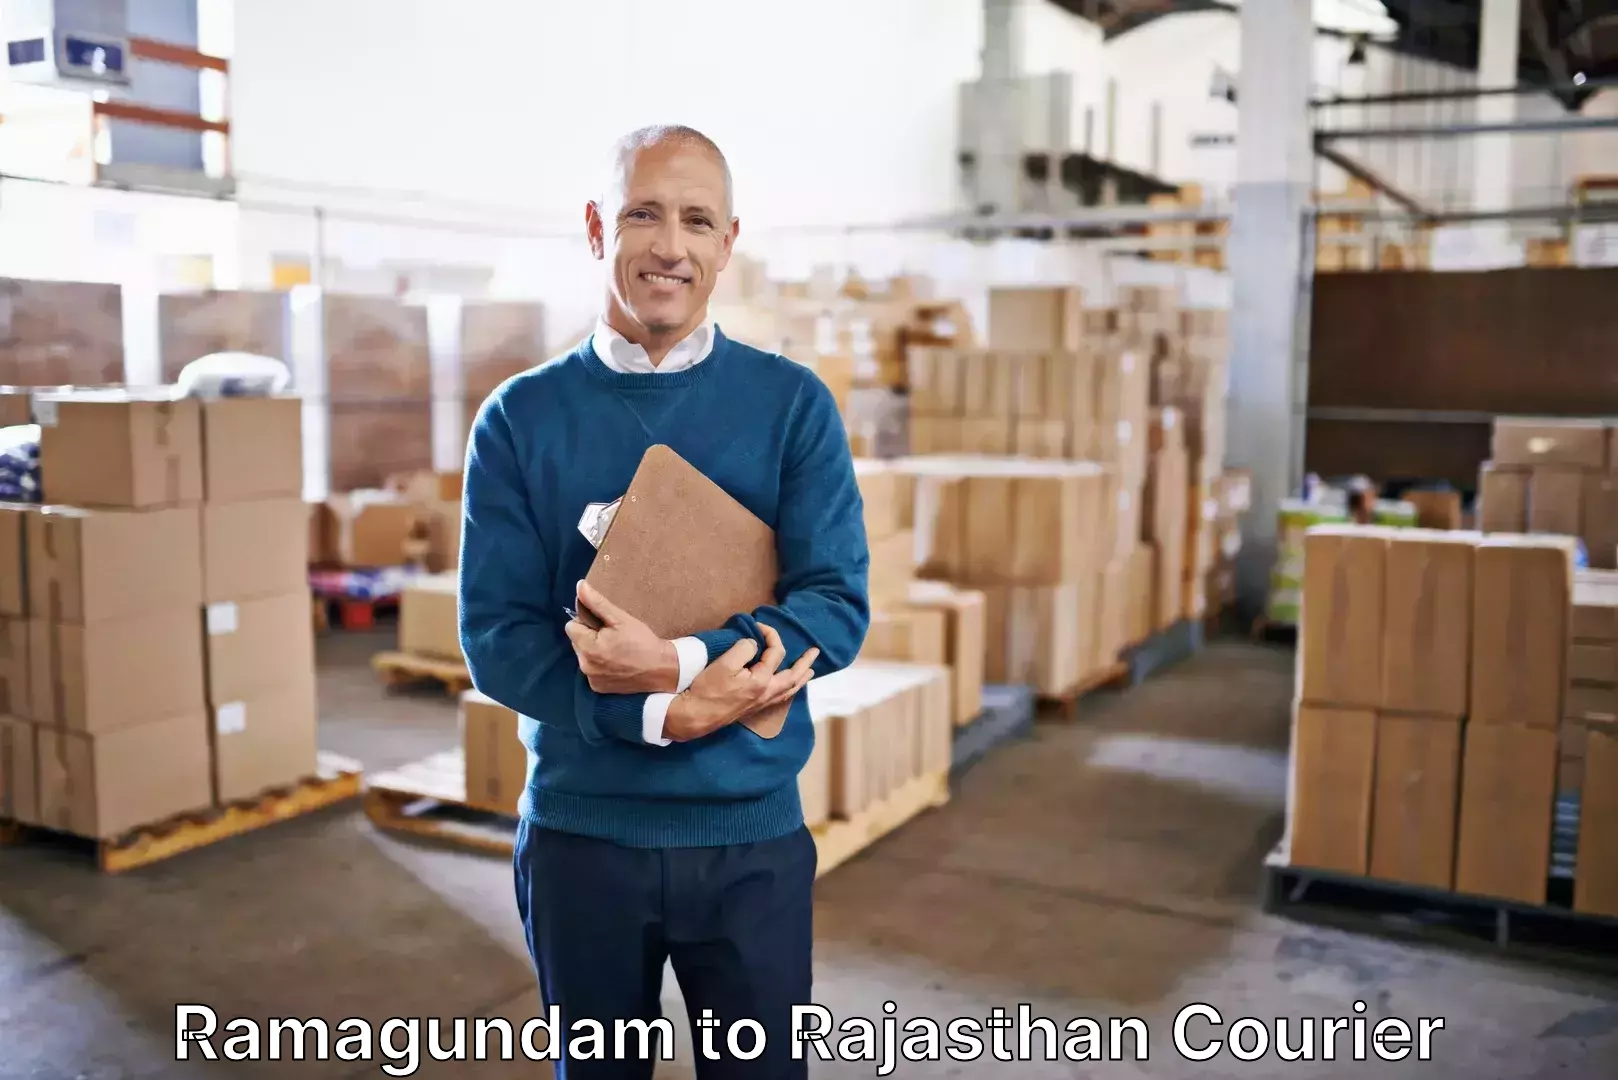 Luggage shipment specialists Ramagundam to Ras Pali